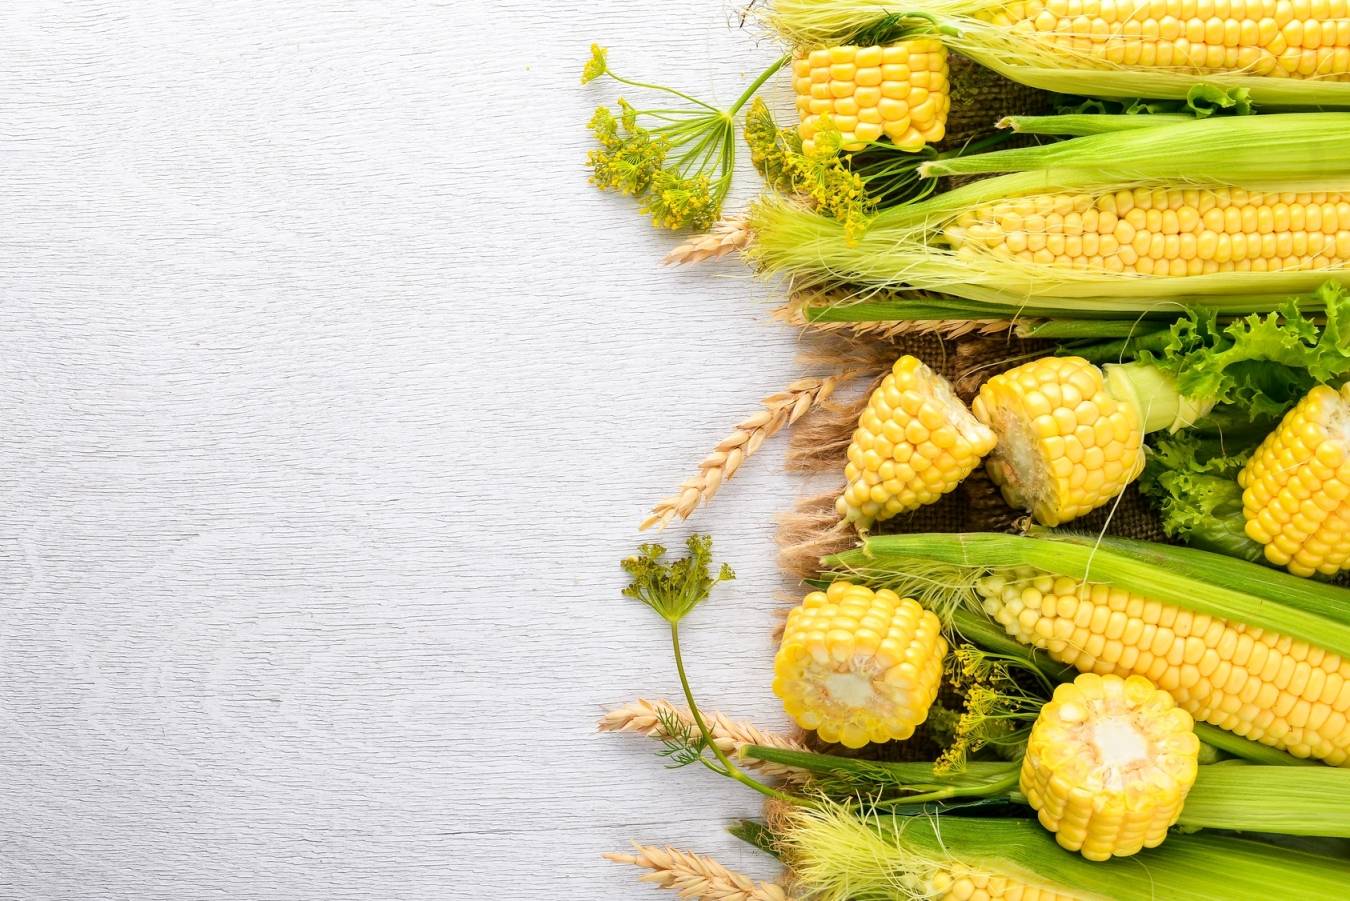 Kukurydza - właściwości i zastosowanie znamion kukurydzy.